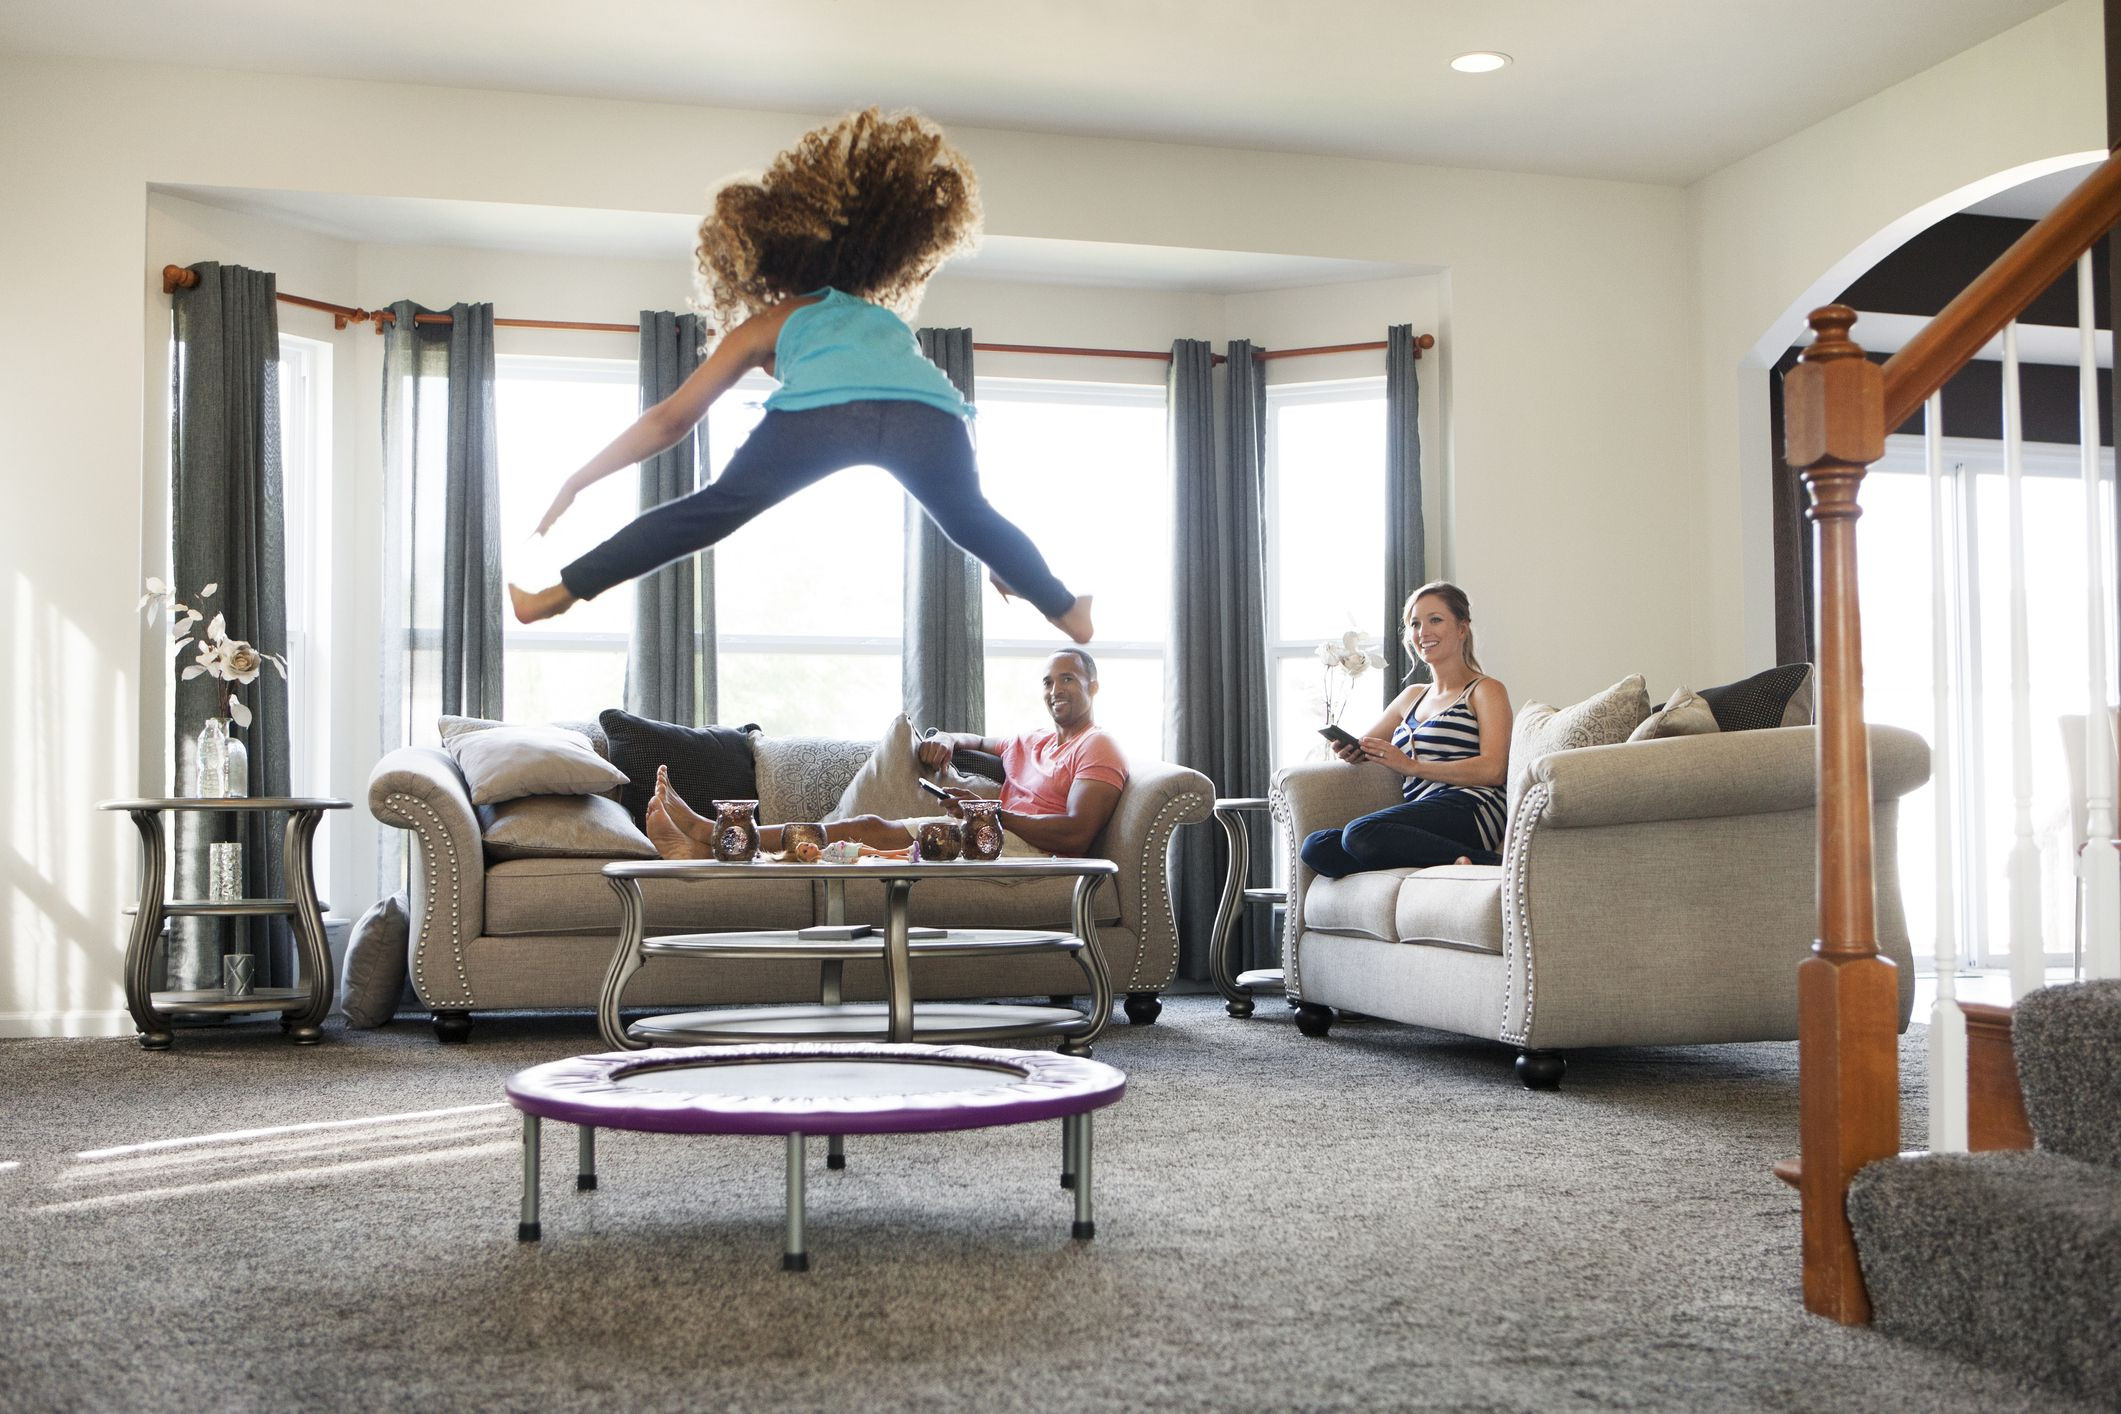 Best Indoor Trampoline For Kids
 The 7 Best Indoor Trampolines for Kids of 2020